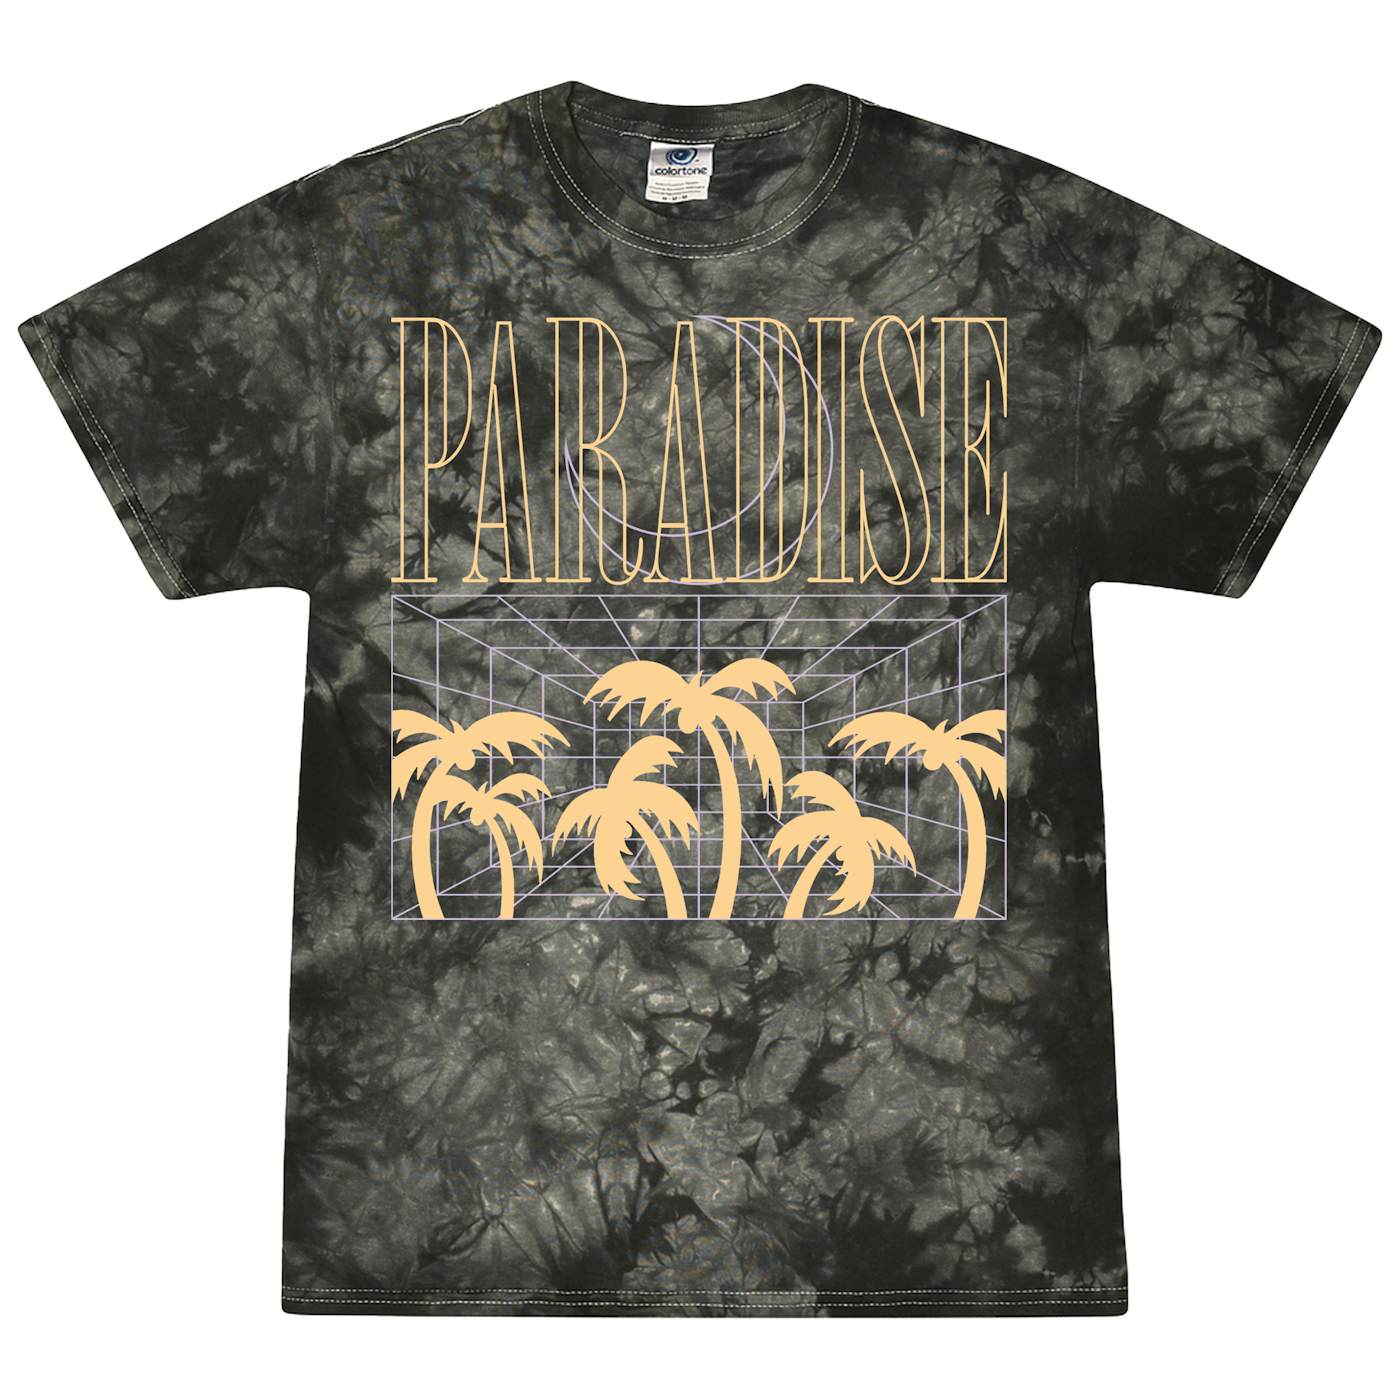 Jamie's Elsewhere - Paradise T-Shirt